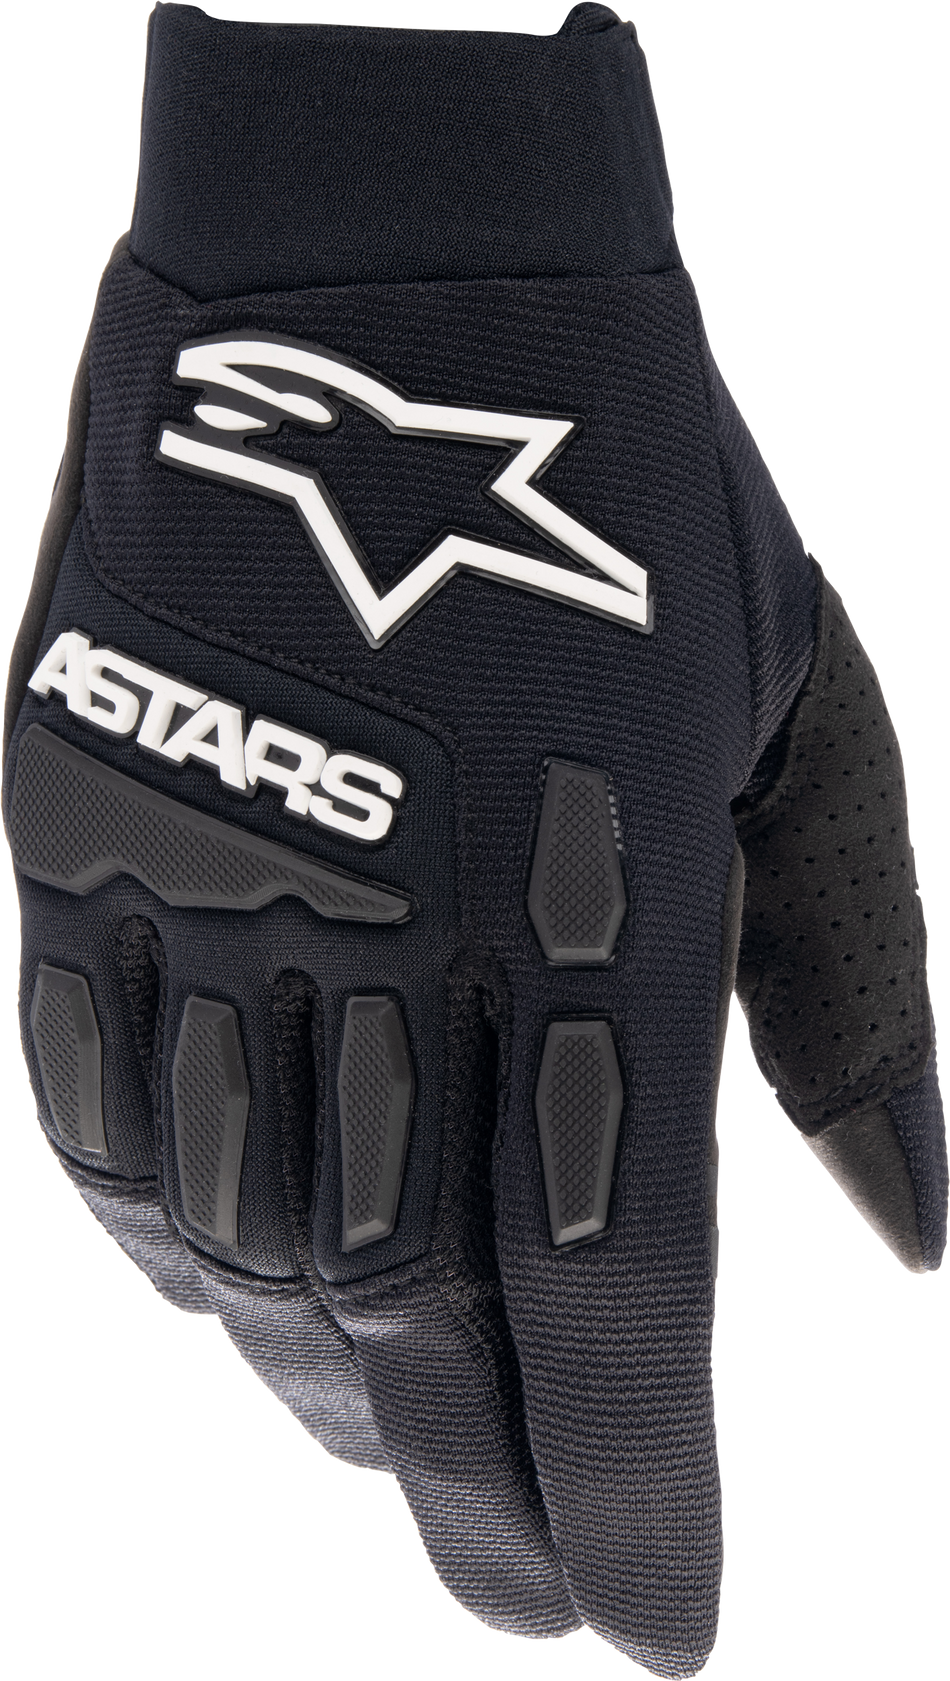 ALPINESTARS Full Bore Xt Gloves Black Md 3563623-10-MD